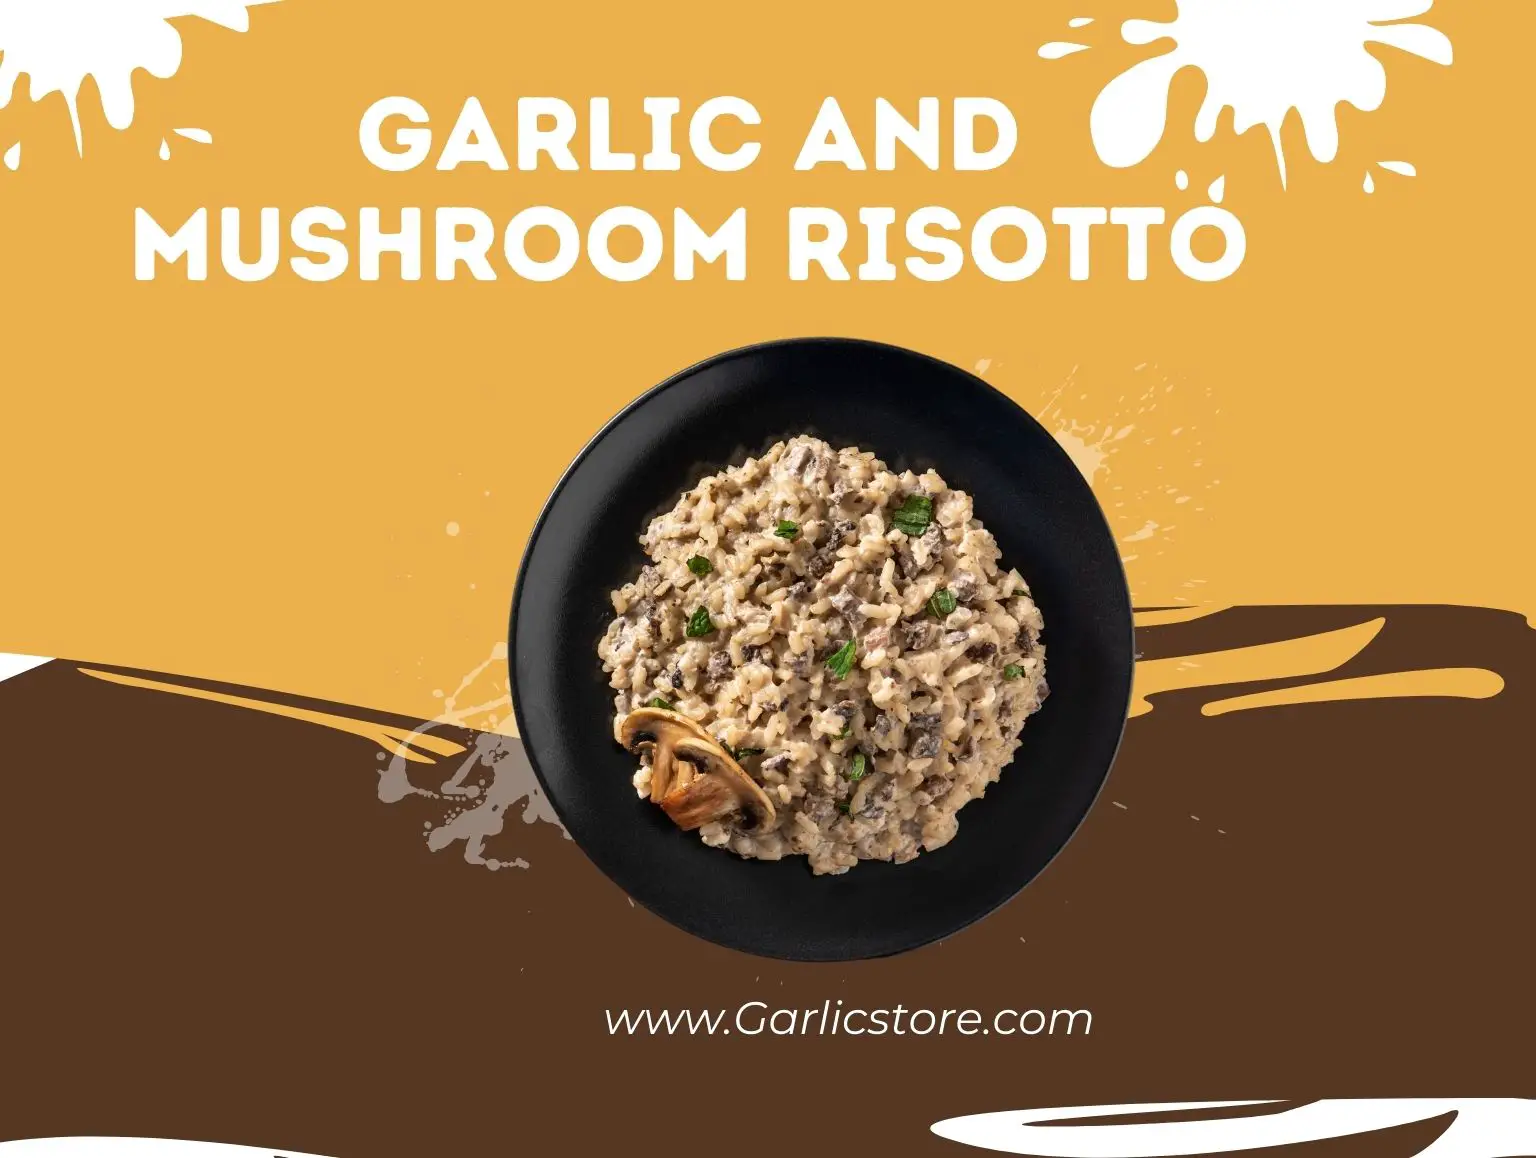 Garlic and Mushroom Risotto